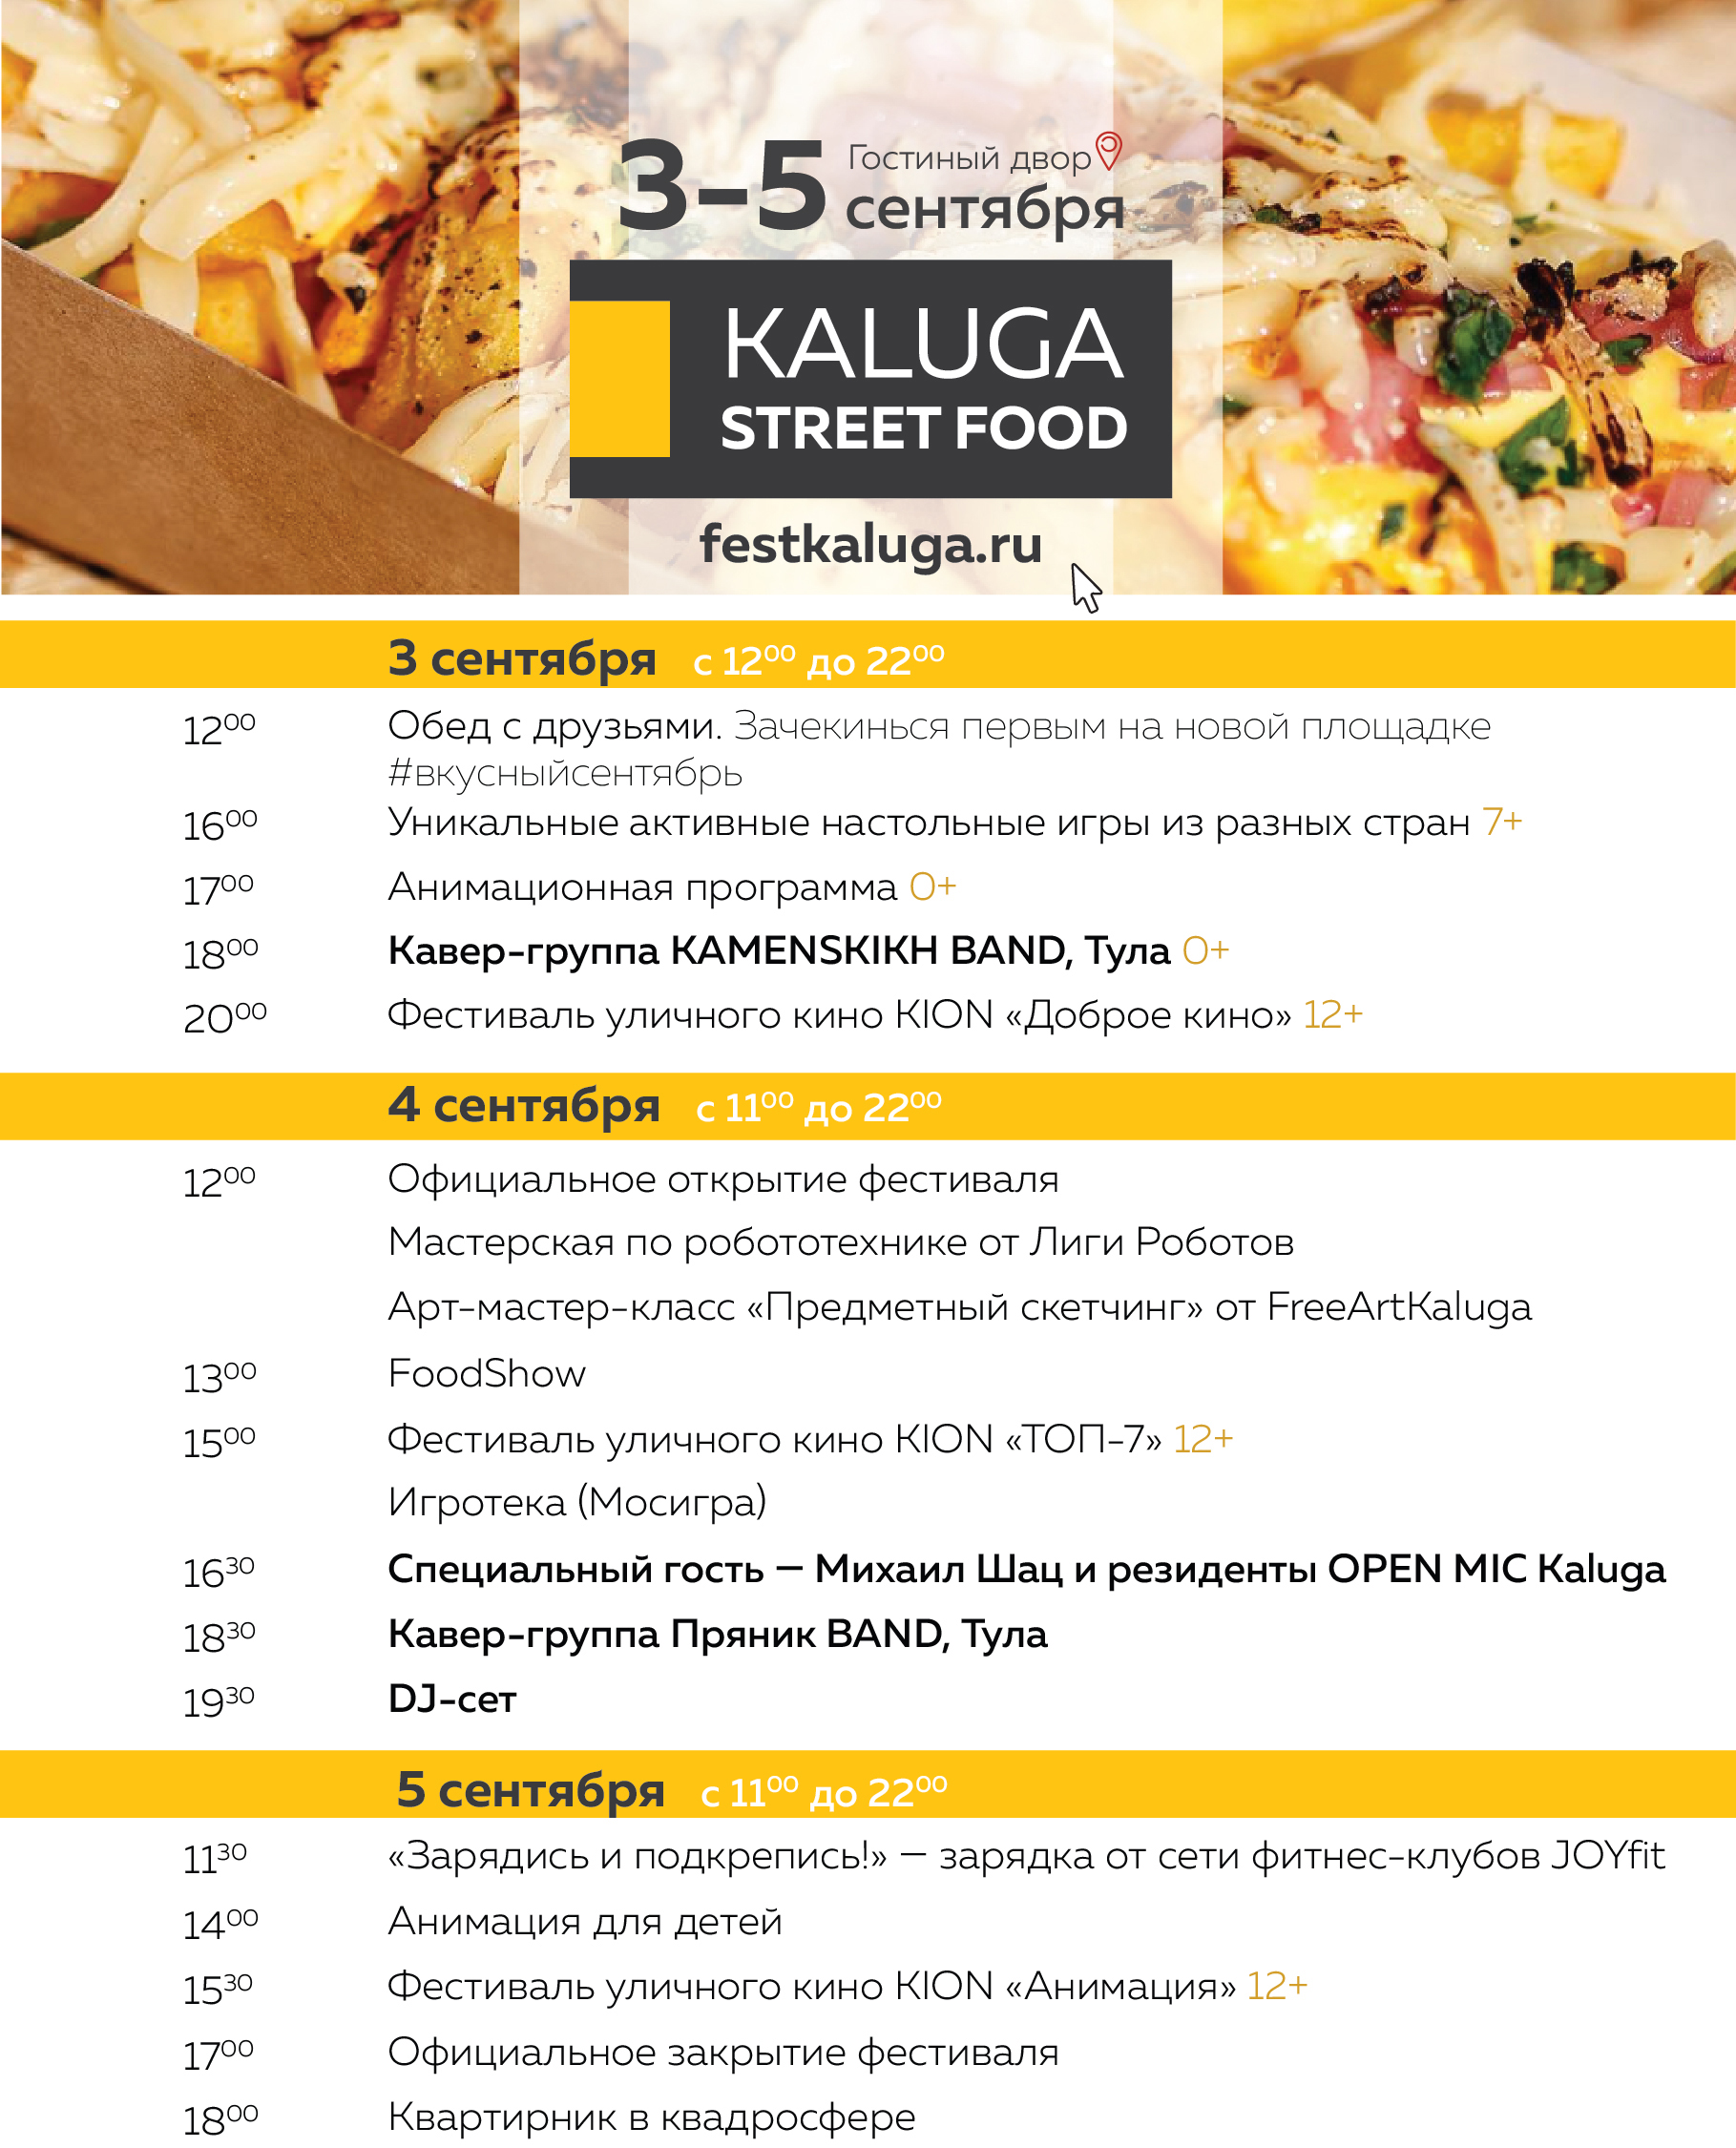 Полная программа фестиваля уличной еды в Калуге 3-5 сентября 2021 года.